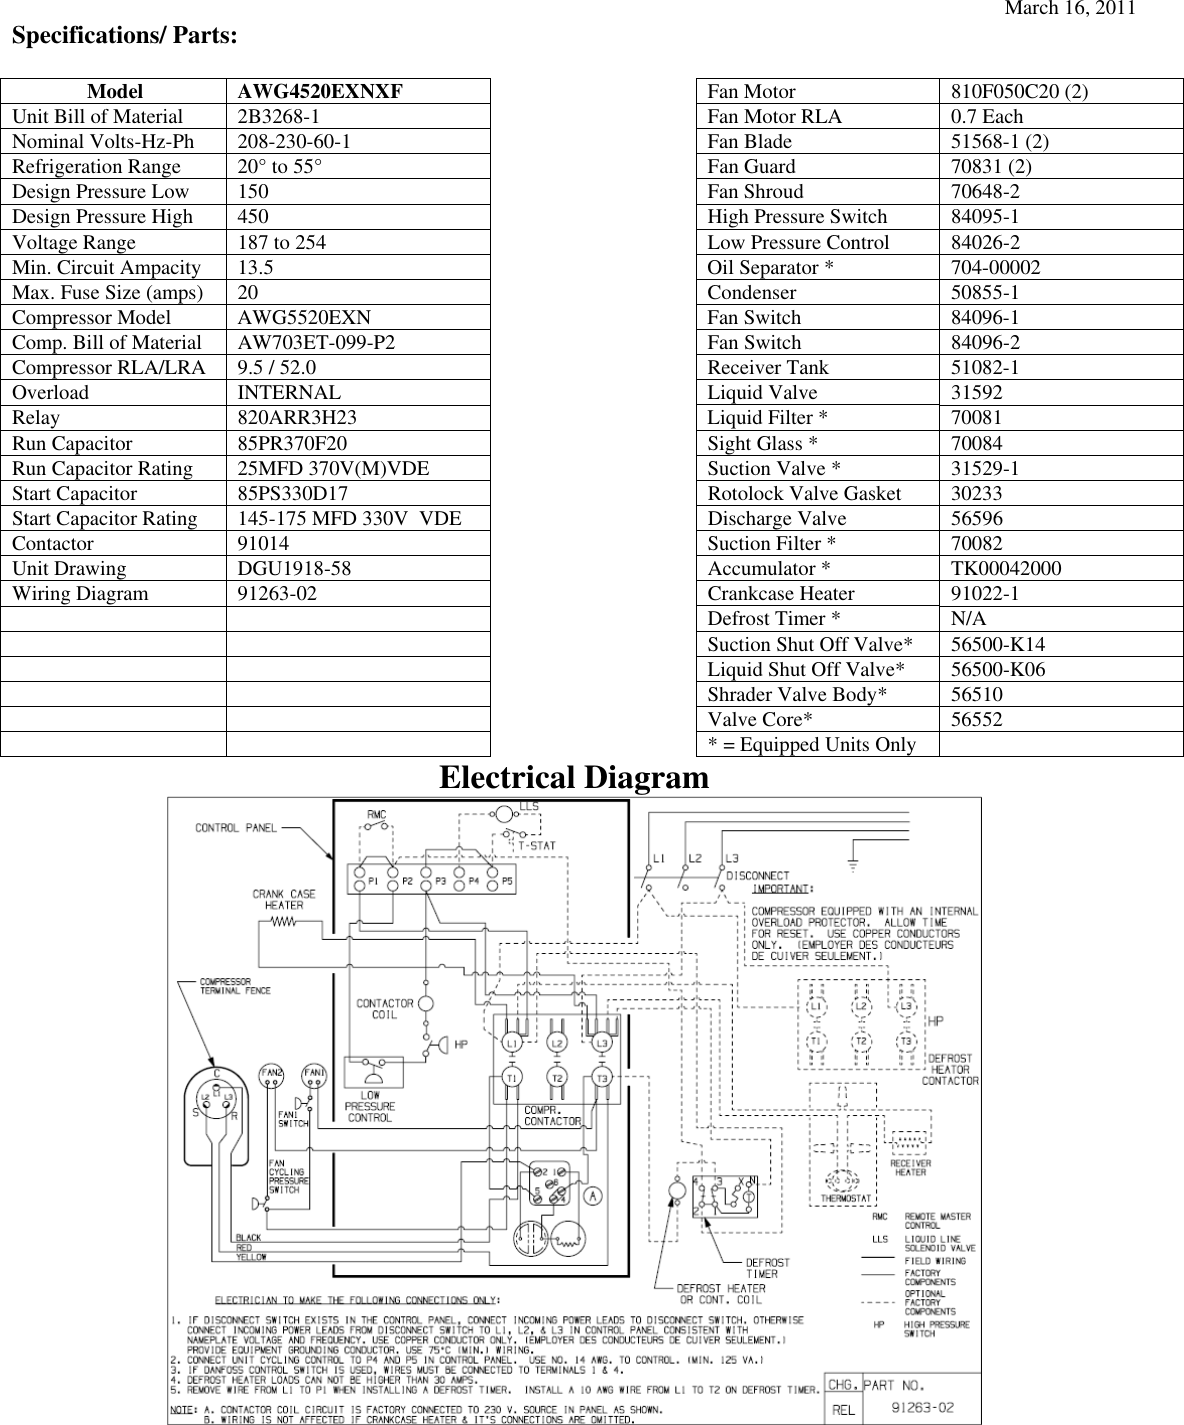 Page 2 of 2 - Tecumseh Tecumseh-Awg4520Exnxf-Performance-Data-Sheet- June 6, 2000  Tecumseh-awg4520exnxf-performance-data-sheet